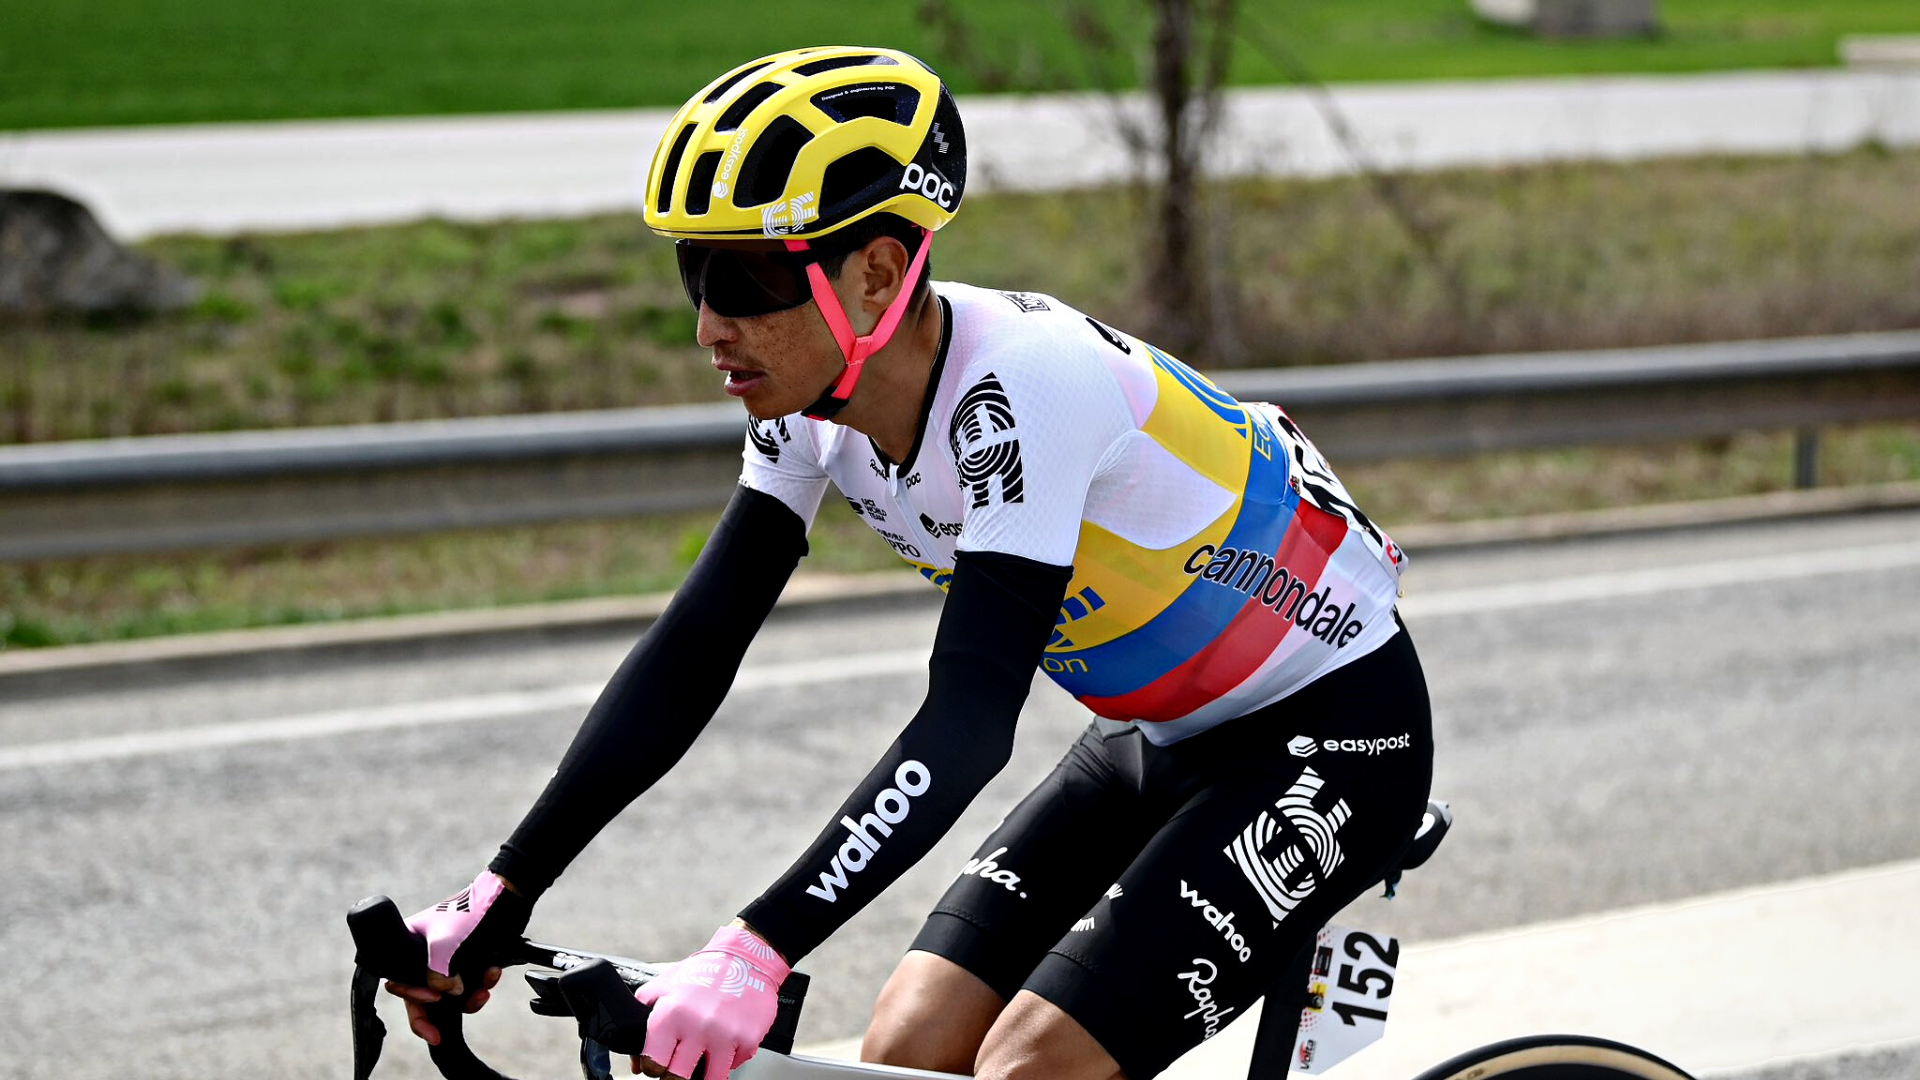 Gran etapa de Esteban Chaves en la Vuelta a Cataluña: el colombiano se metió al top 10 de la general